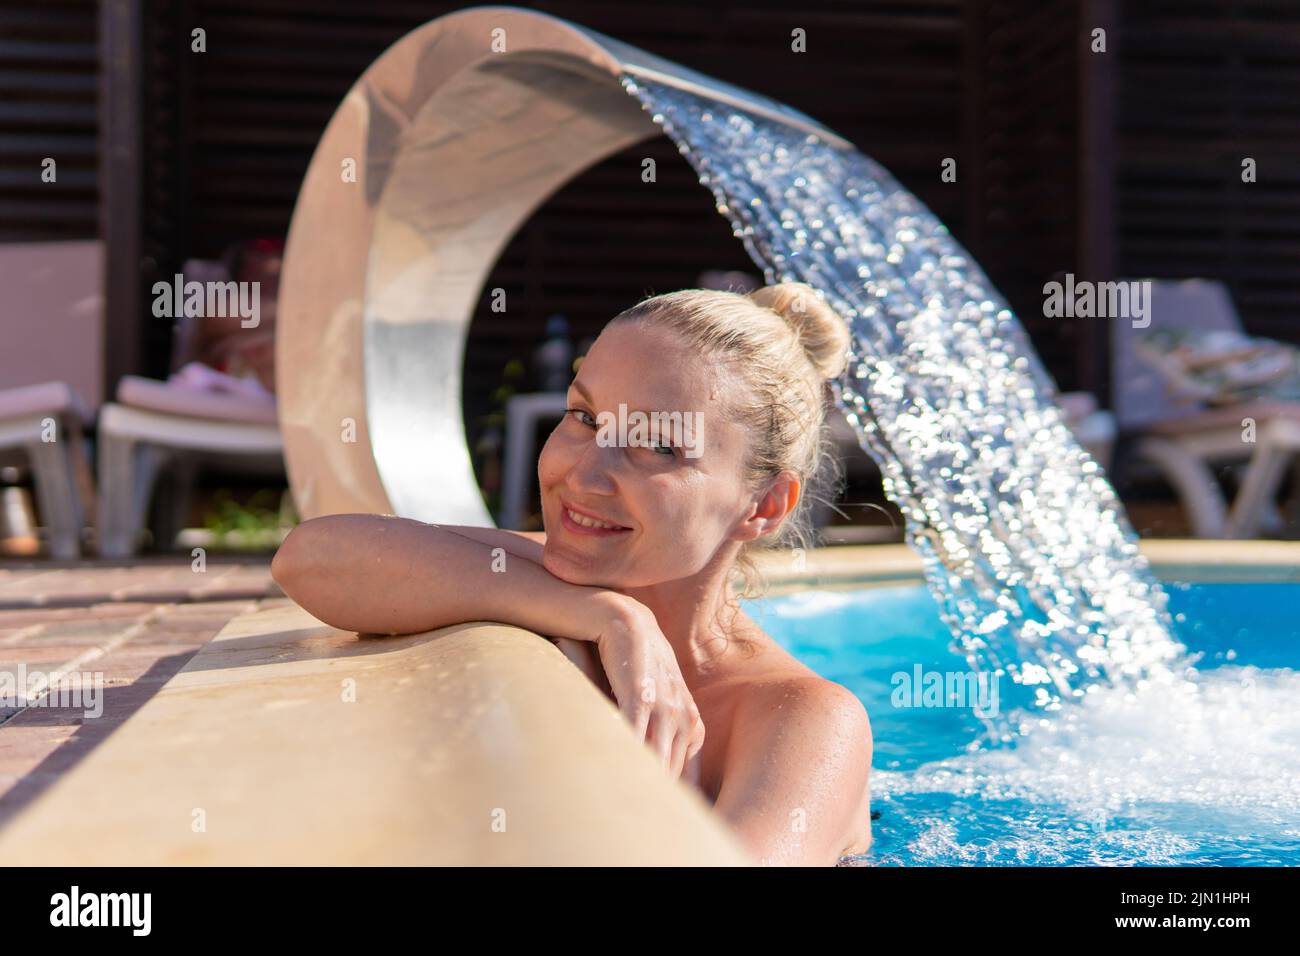 Lächelnd Pool Wasserfall Frau schwimmen jung schöne Luxus Leben entspannen, Konzept Wellness Körper für Hautpflege und spritzt Aqua, Brunette Tropfen Stockfoto